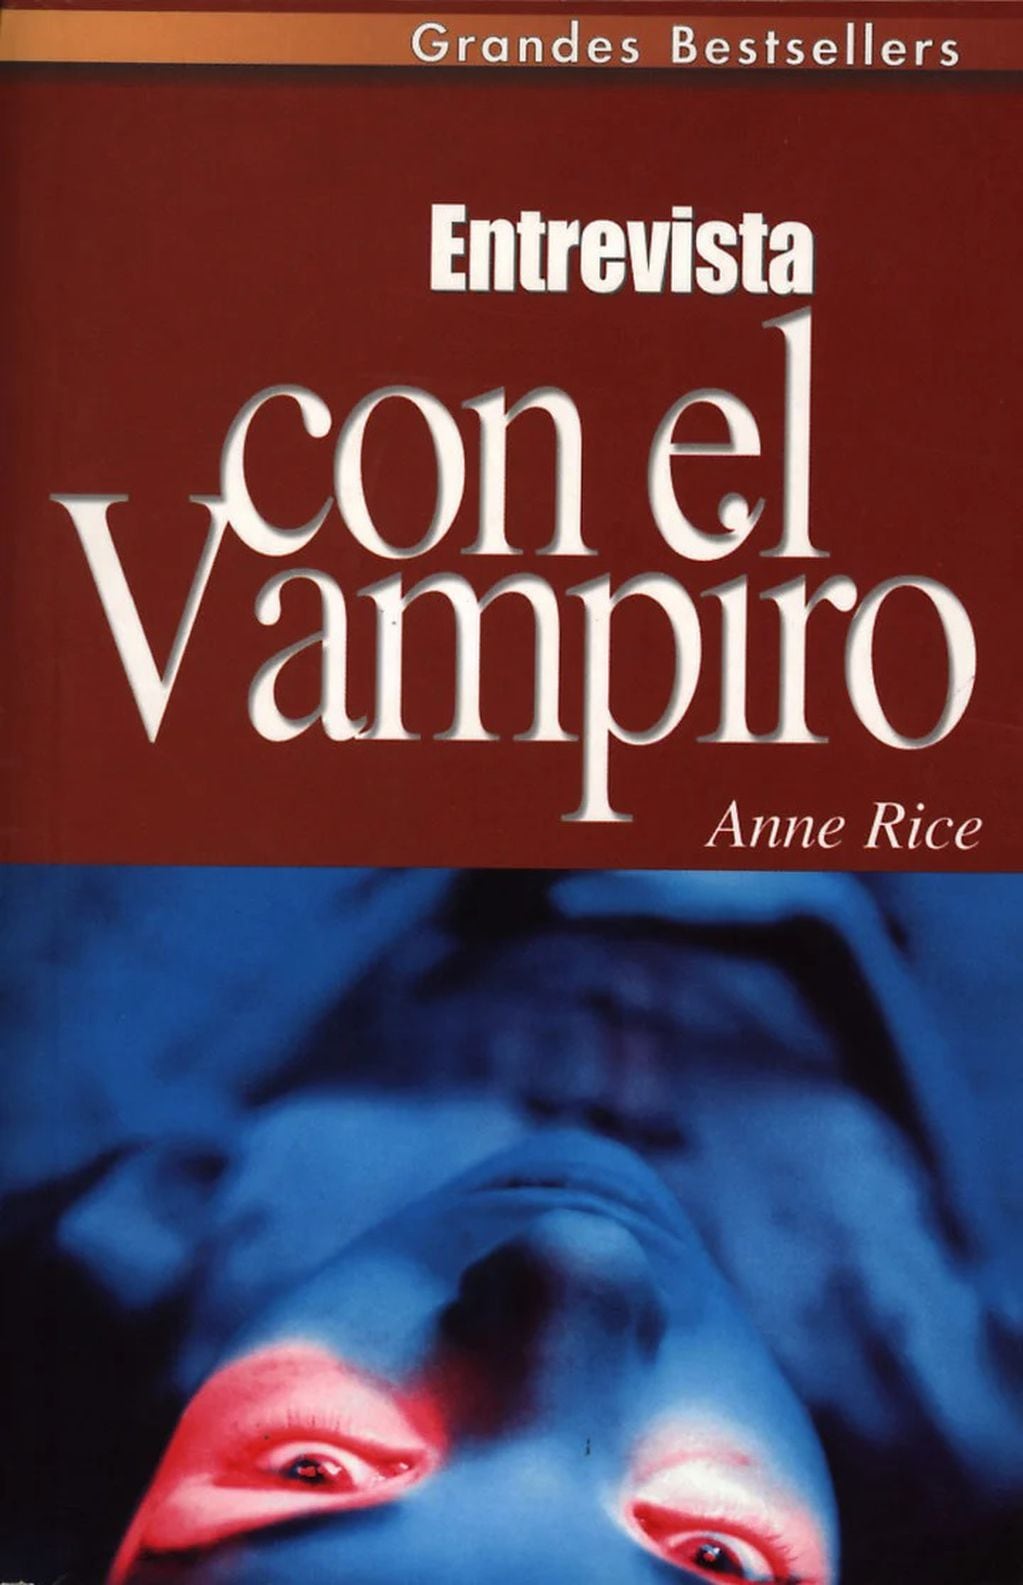 "Entrevista con el vampiro", novela de Anne Rice (1976)